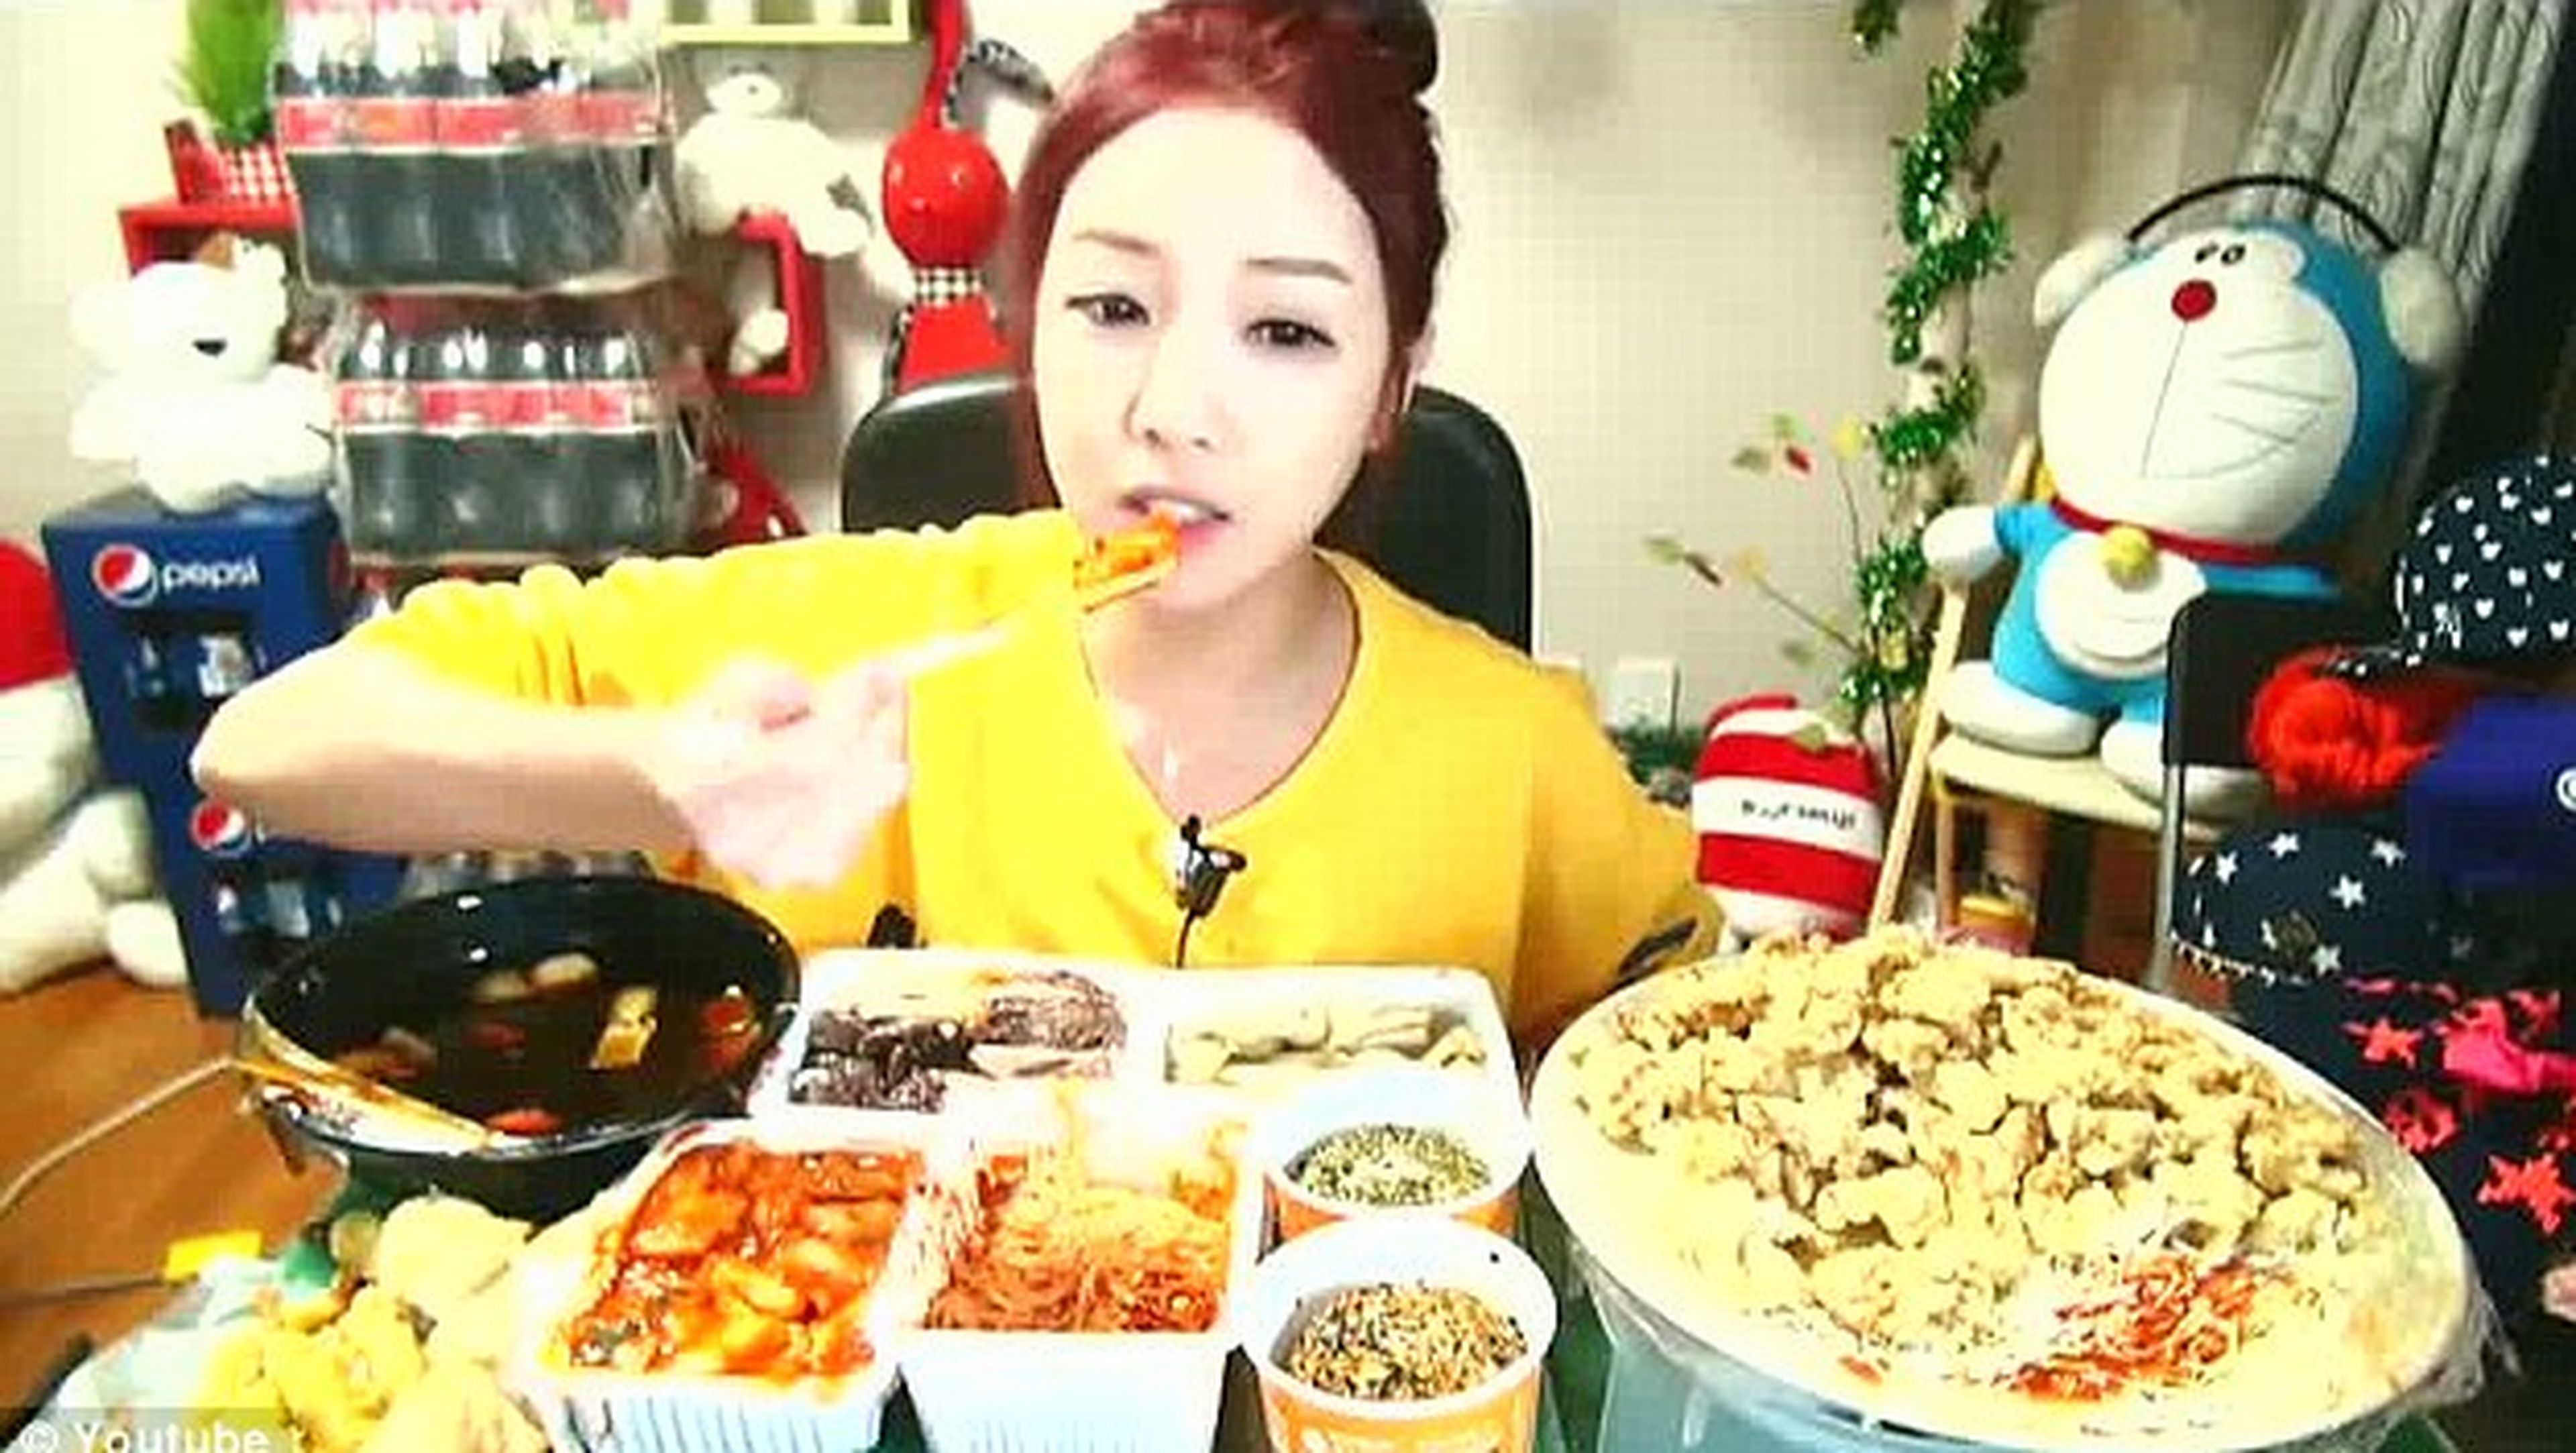 Coreana gana dinero comiendo delante de su web cam